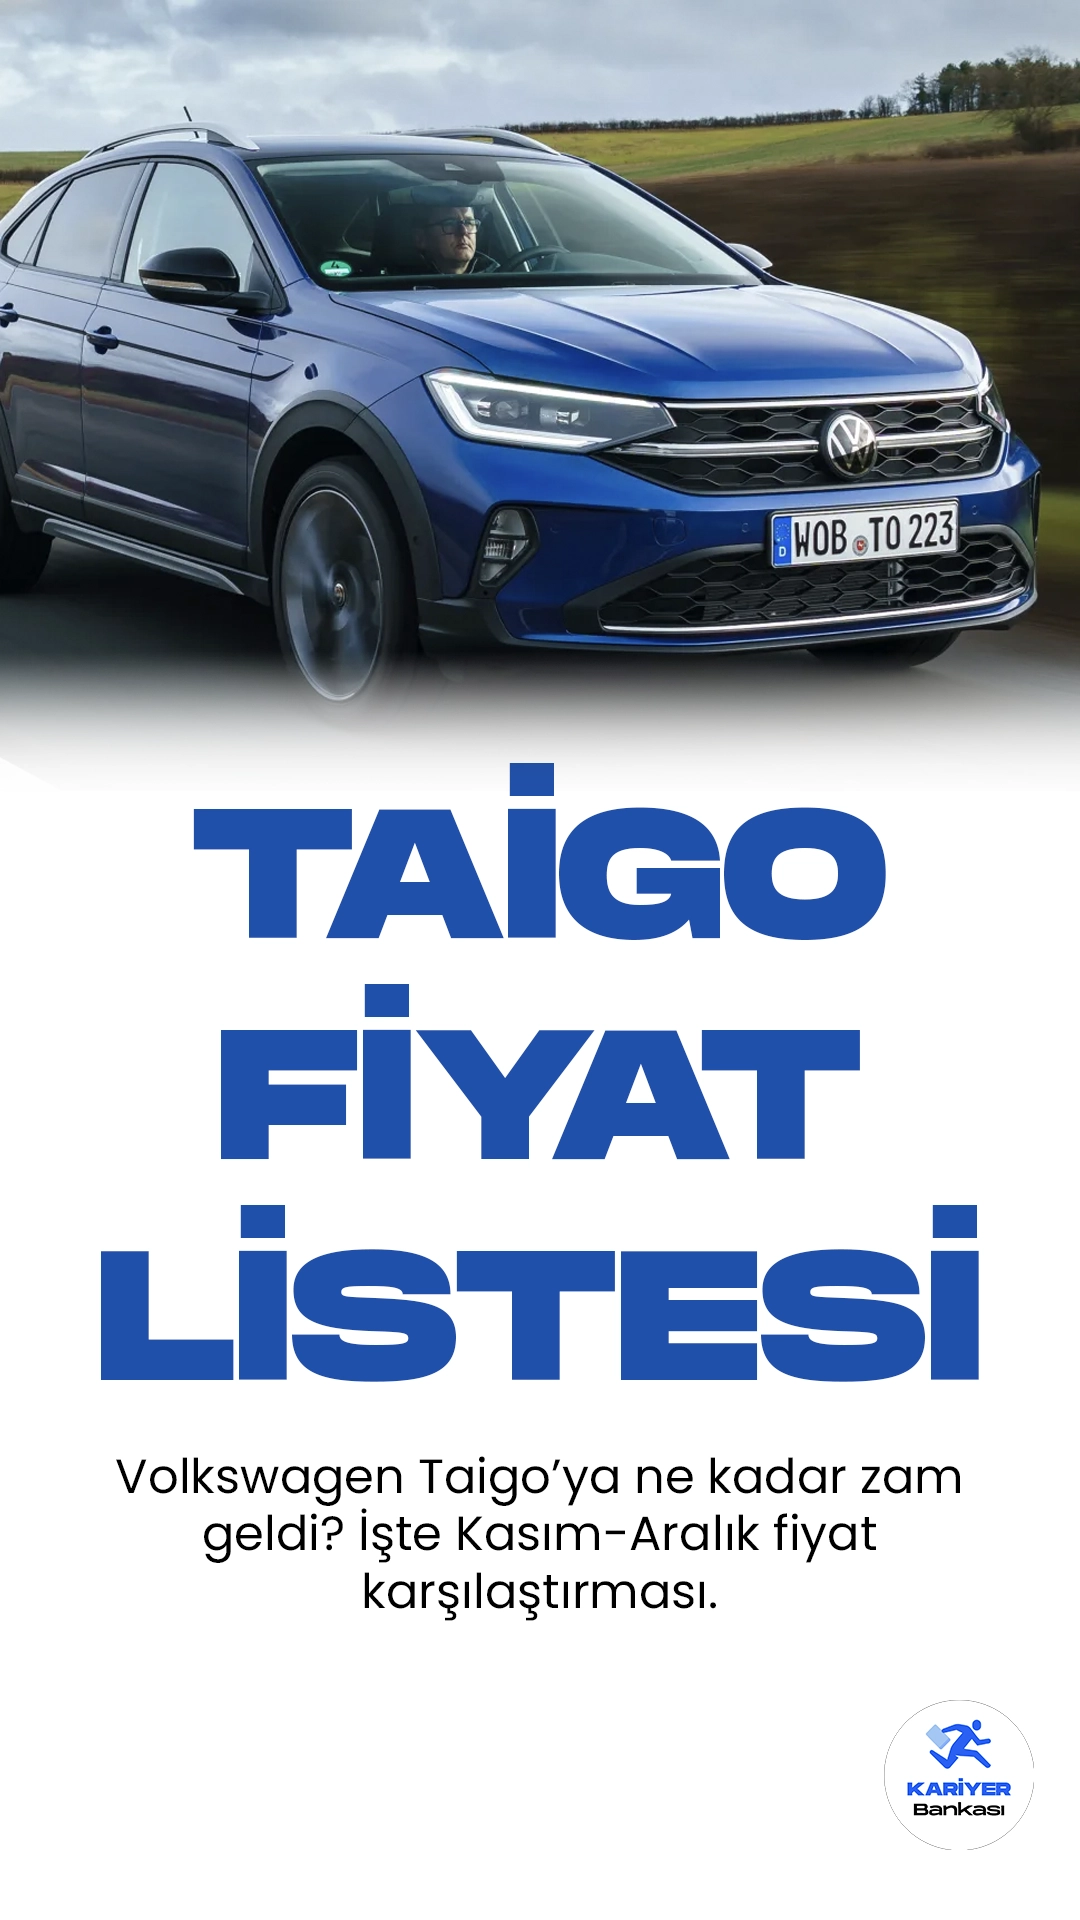 Volkswagen Taigo Aralık 2023 Fiyat Listesi Yayımlandı.Volkswagen, şık tasarımı ve üstün performansıyla dikkat çeken yeni modeli Taigo'yu tanıttı. Alman otomotiv devi, Taigo ile kompakt crossover segmentinde iddialı bir yer edinmeyi hedefliyor. Taigo'nun dinamik çizgileri ve agresif ön tasarımı, şehir içi ve şehir dışı kullanım için ideal bir denge sunuyor. Geniş iç mekanı ve kullanıcı dostu teknolojik özellikleri, sürücü ve yolculara konforlu bir deneyim vaat ediyor.